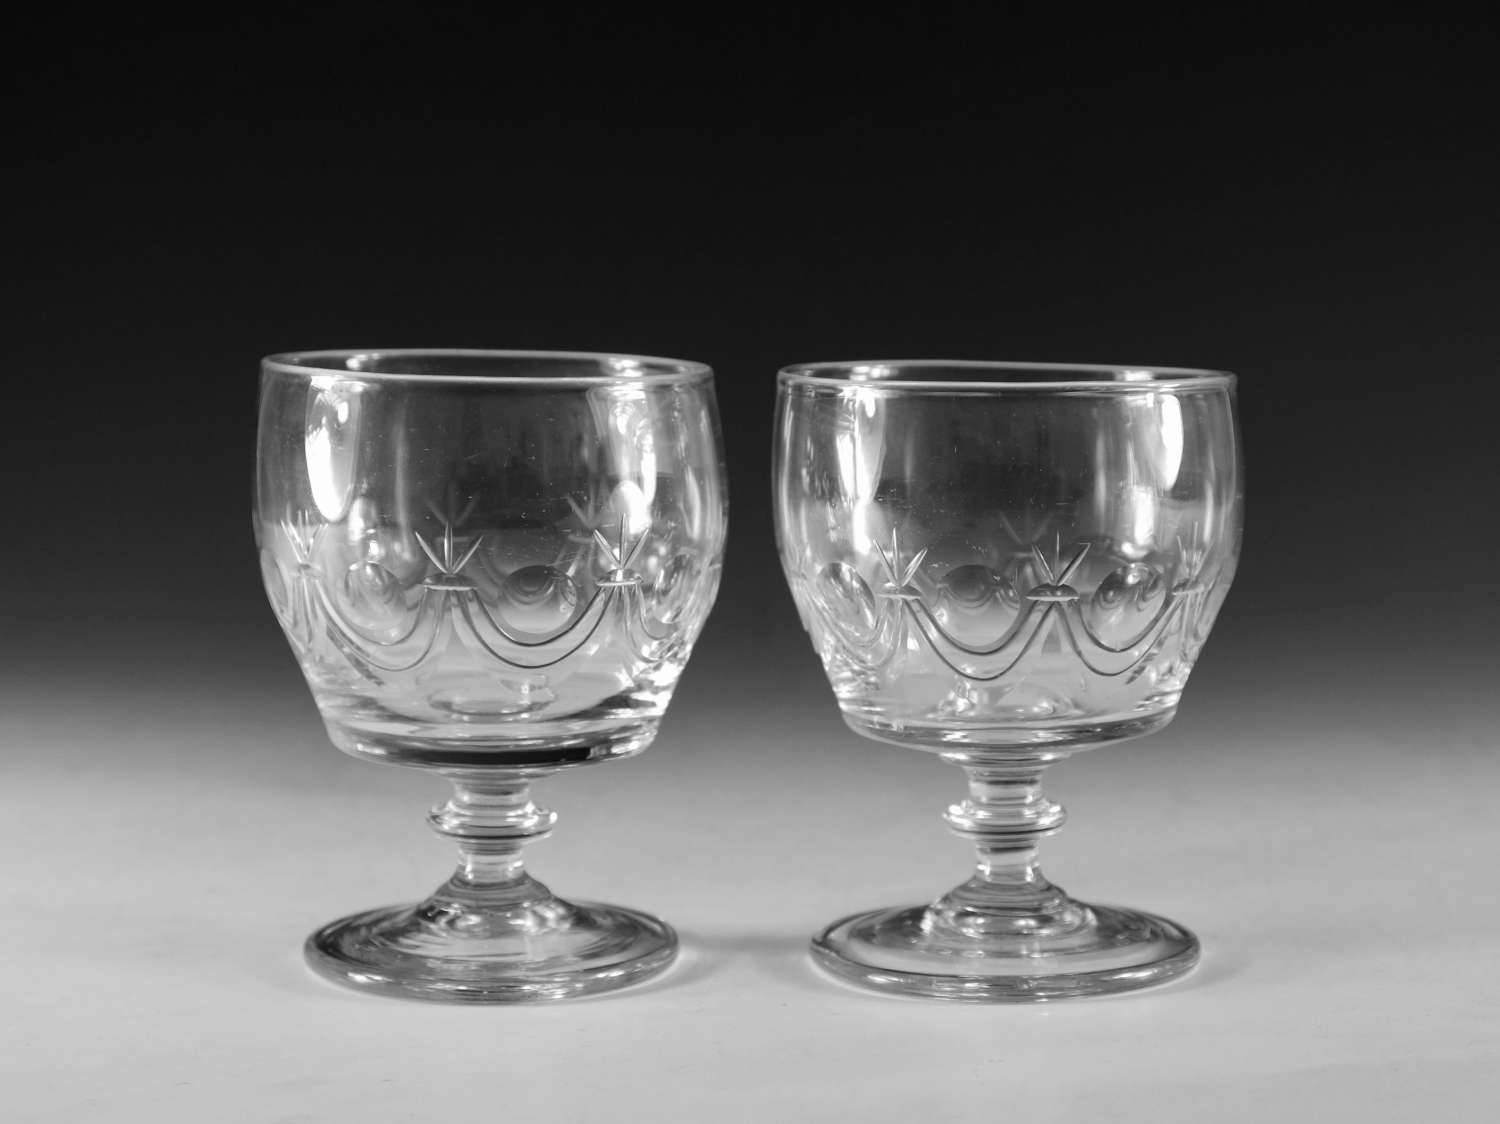 Antique glass rummers pair Irish c1830